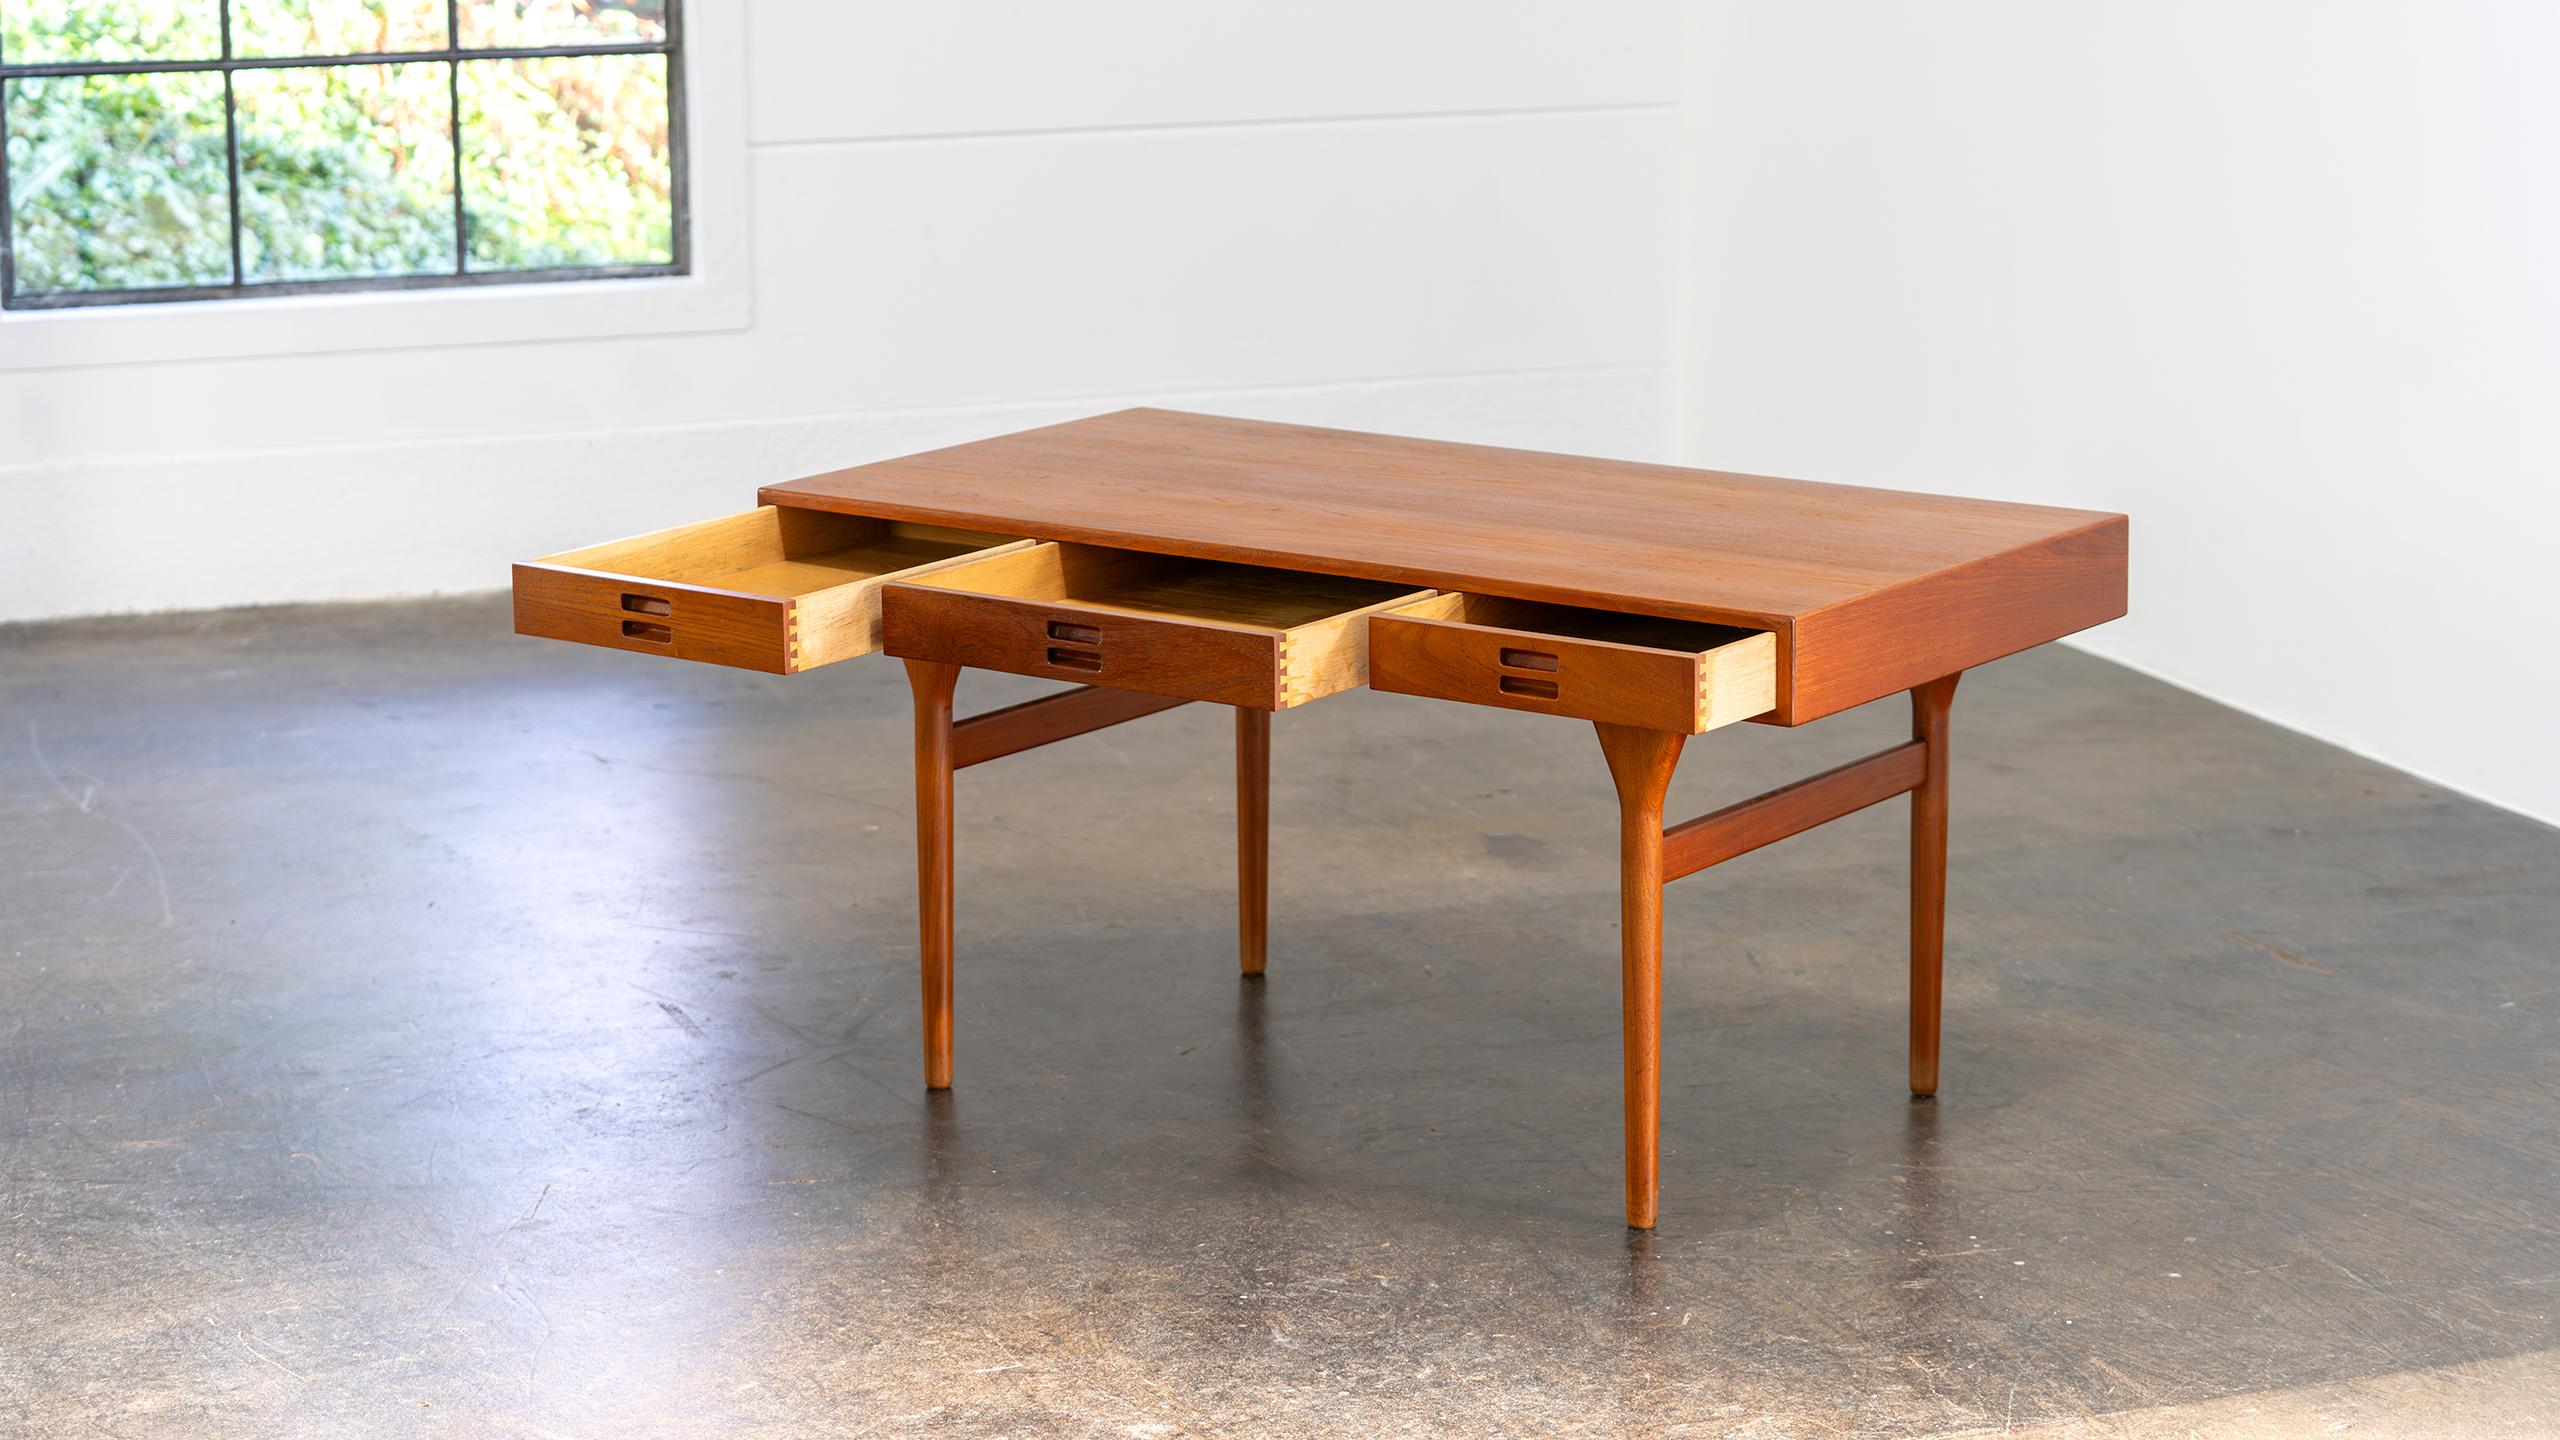 Nanna Ditzel Table Desk in Teak Søren Willadsen 1958 Denmark Mid Century Modern For Sale 5